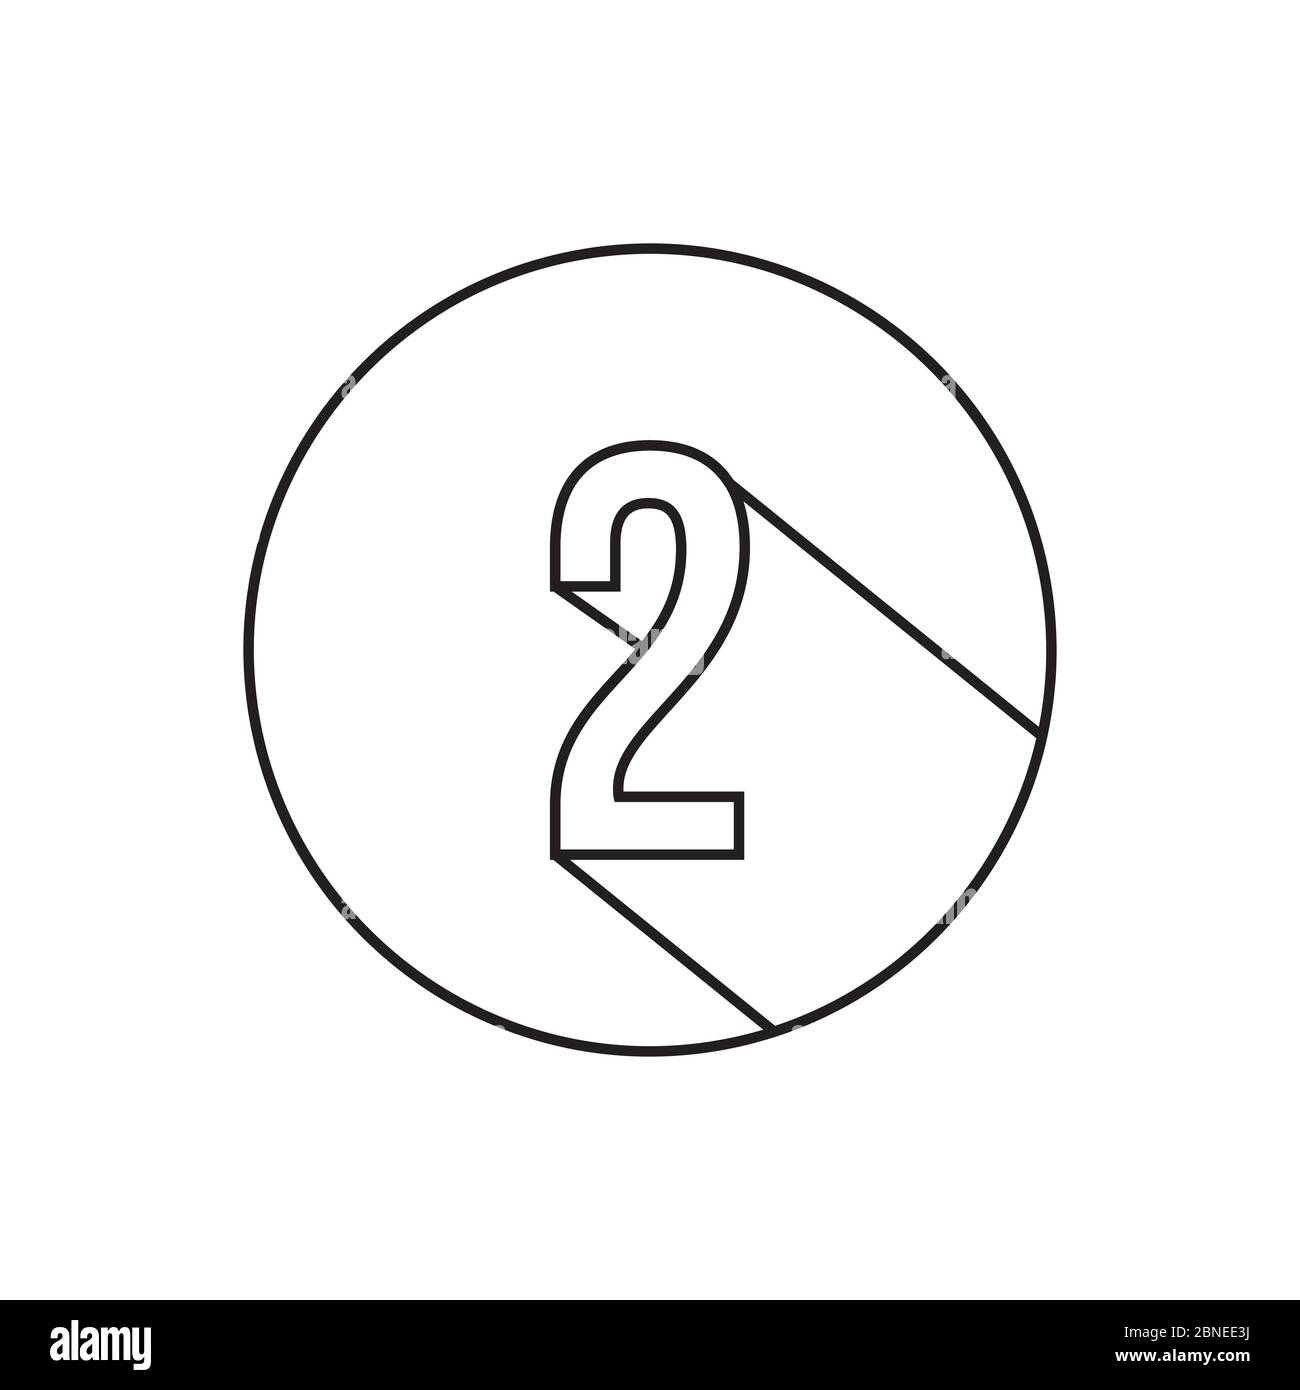 vettore simbolo a 2 linee numeriche isolato su sfondo bianco Illustrazione Vettoriale